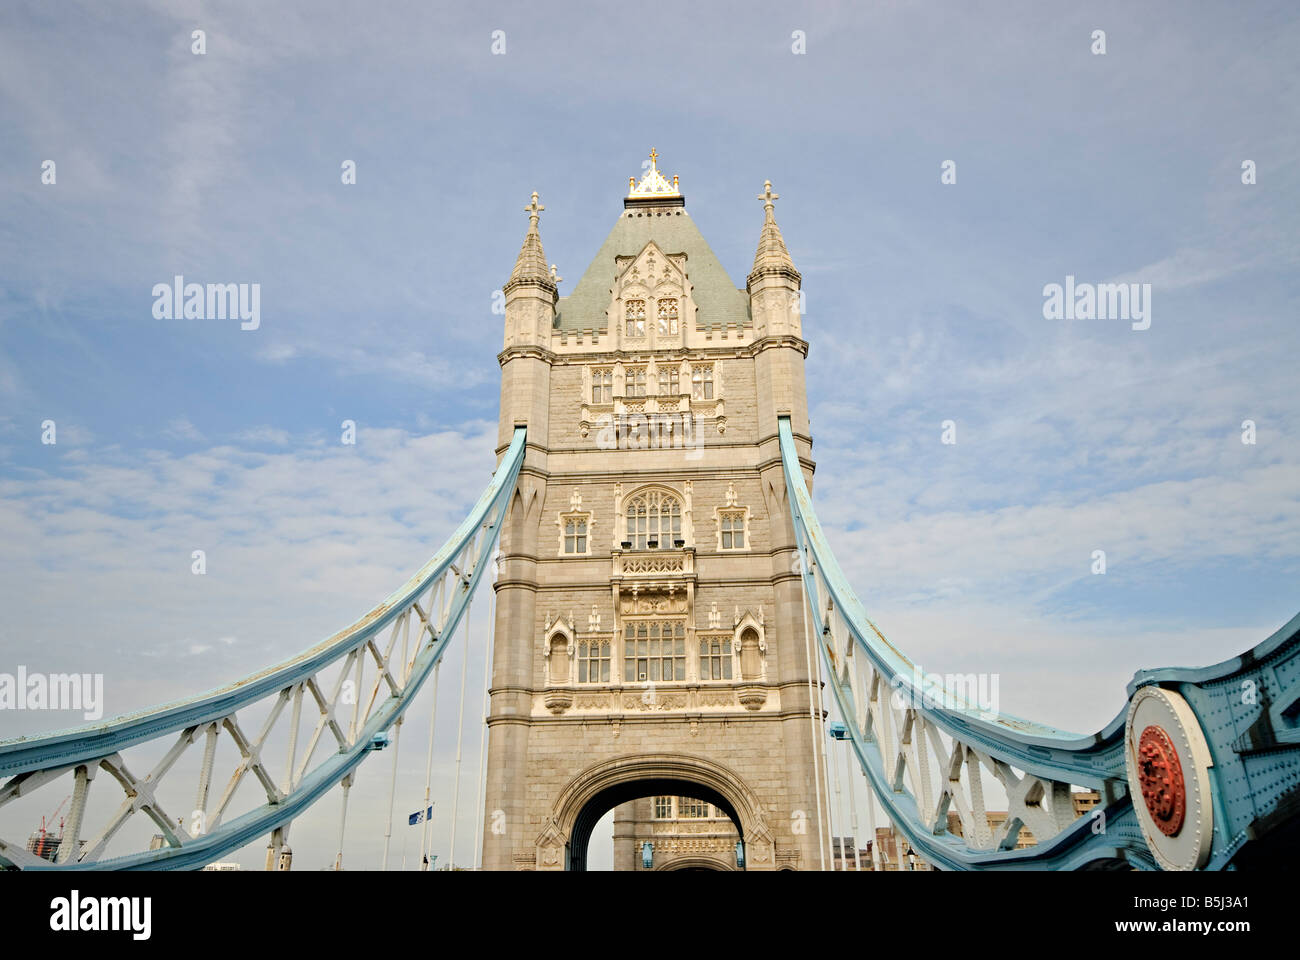 LONDRES, Royaume-Uni — Tower Bridge, un symbole emblématique de Londres, traverse la Tamise près de la Tour de Londres. Le pont de bascule et de suspension, achevé en 1894, est une merveille de l'ingénierie victorienne et un important monument historique, attirant des touristes du monde entier. Banque D'Images